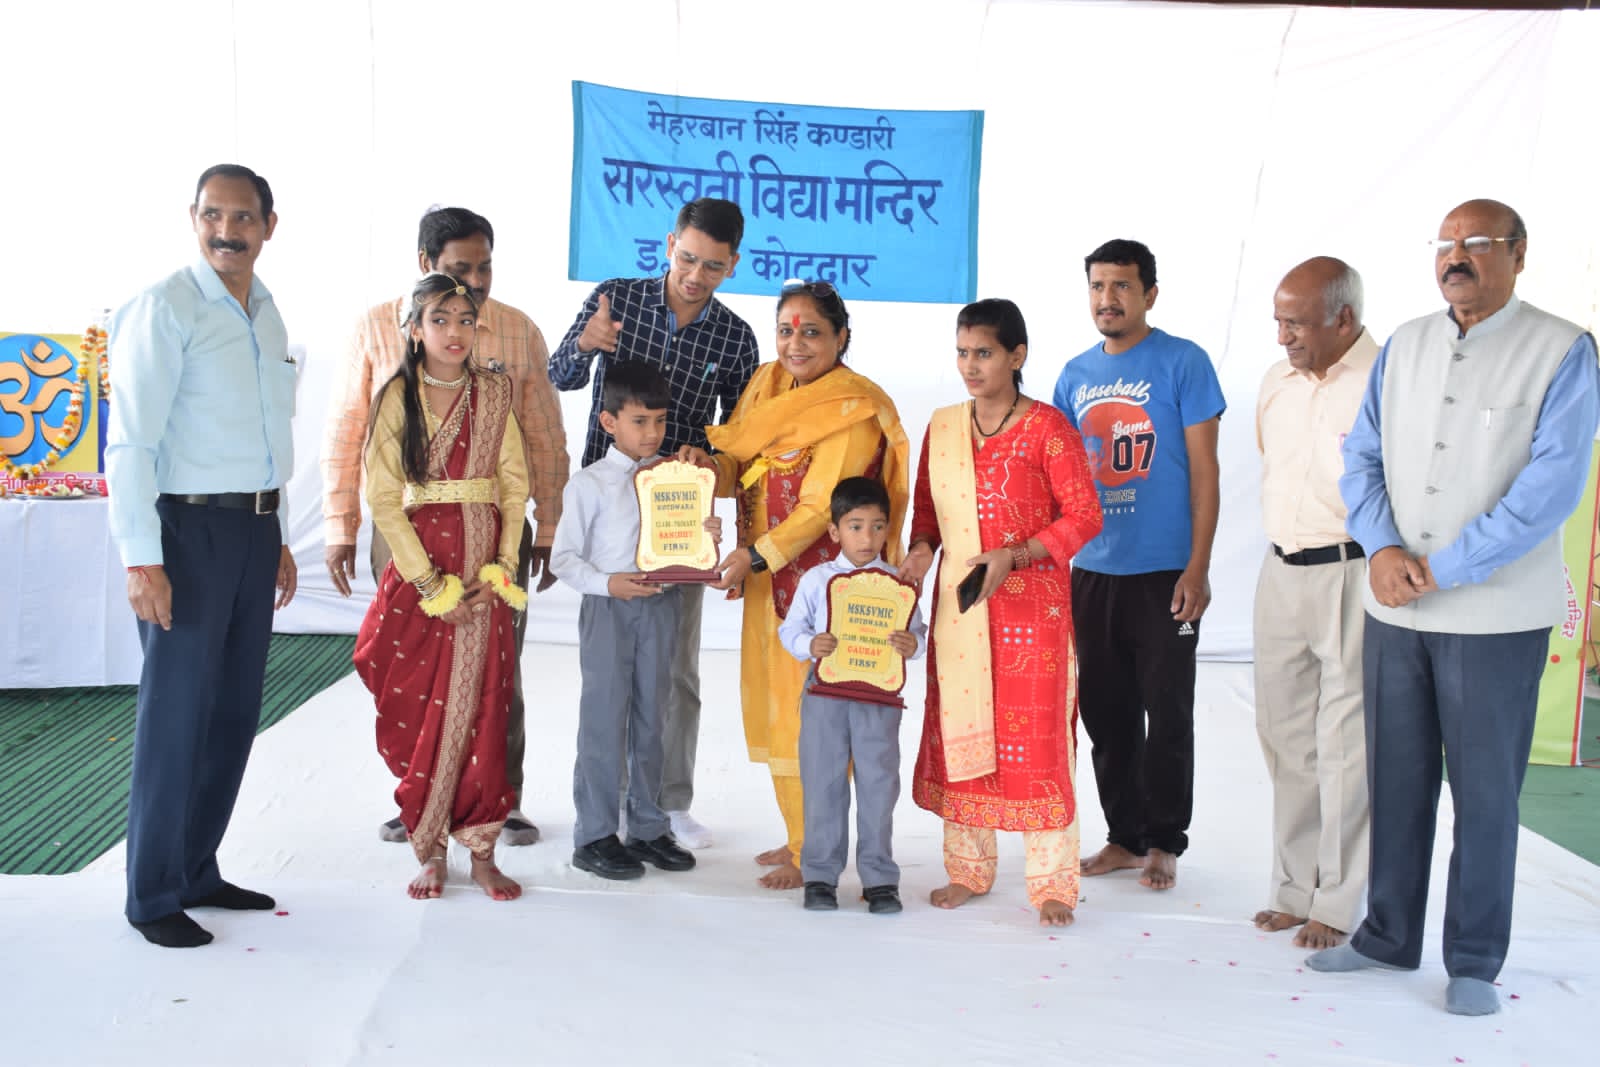 कोटद्वार: सरस्वती विद्या मंदिर में मेधावी छात्र-छात्राओं को पुरस्कार एवं प्रशस्ति पत्र भी वितरित किए,,,।